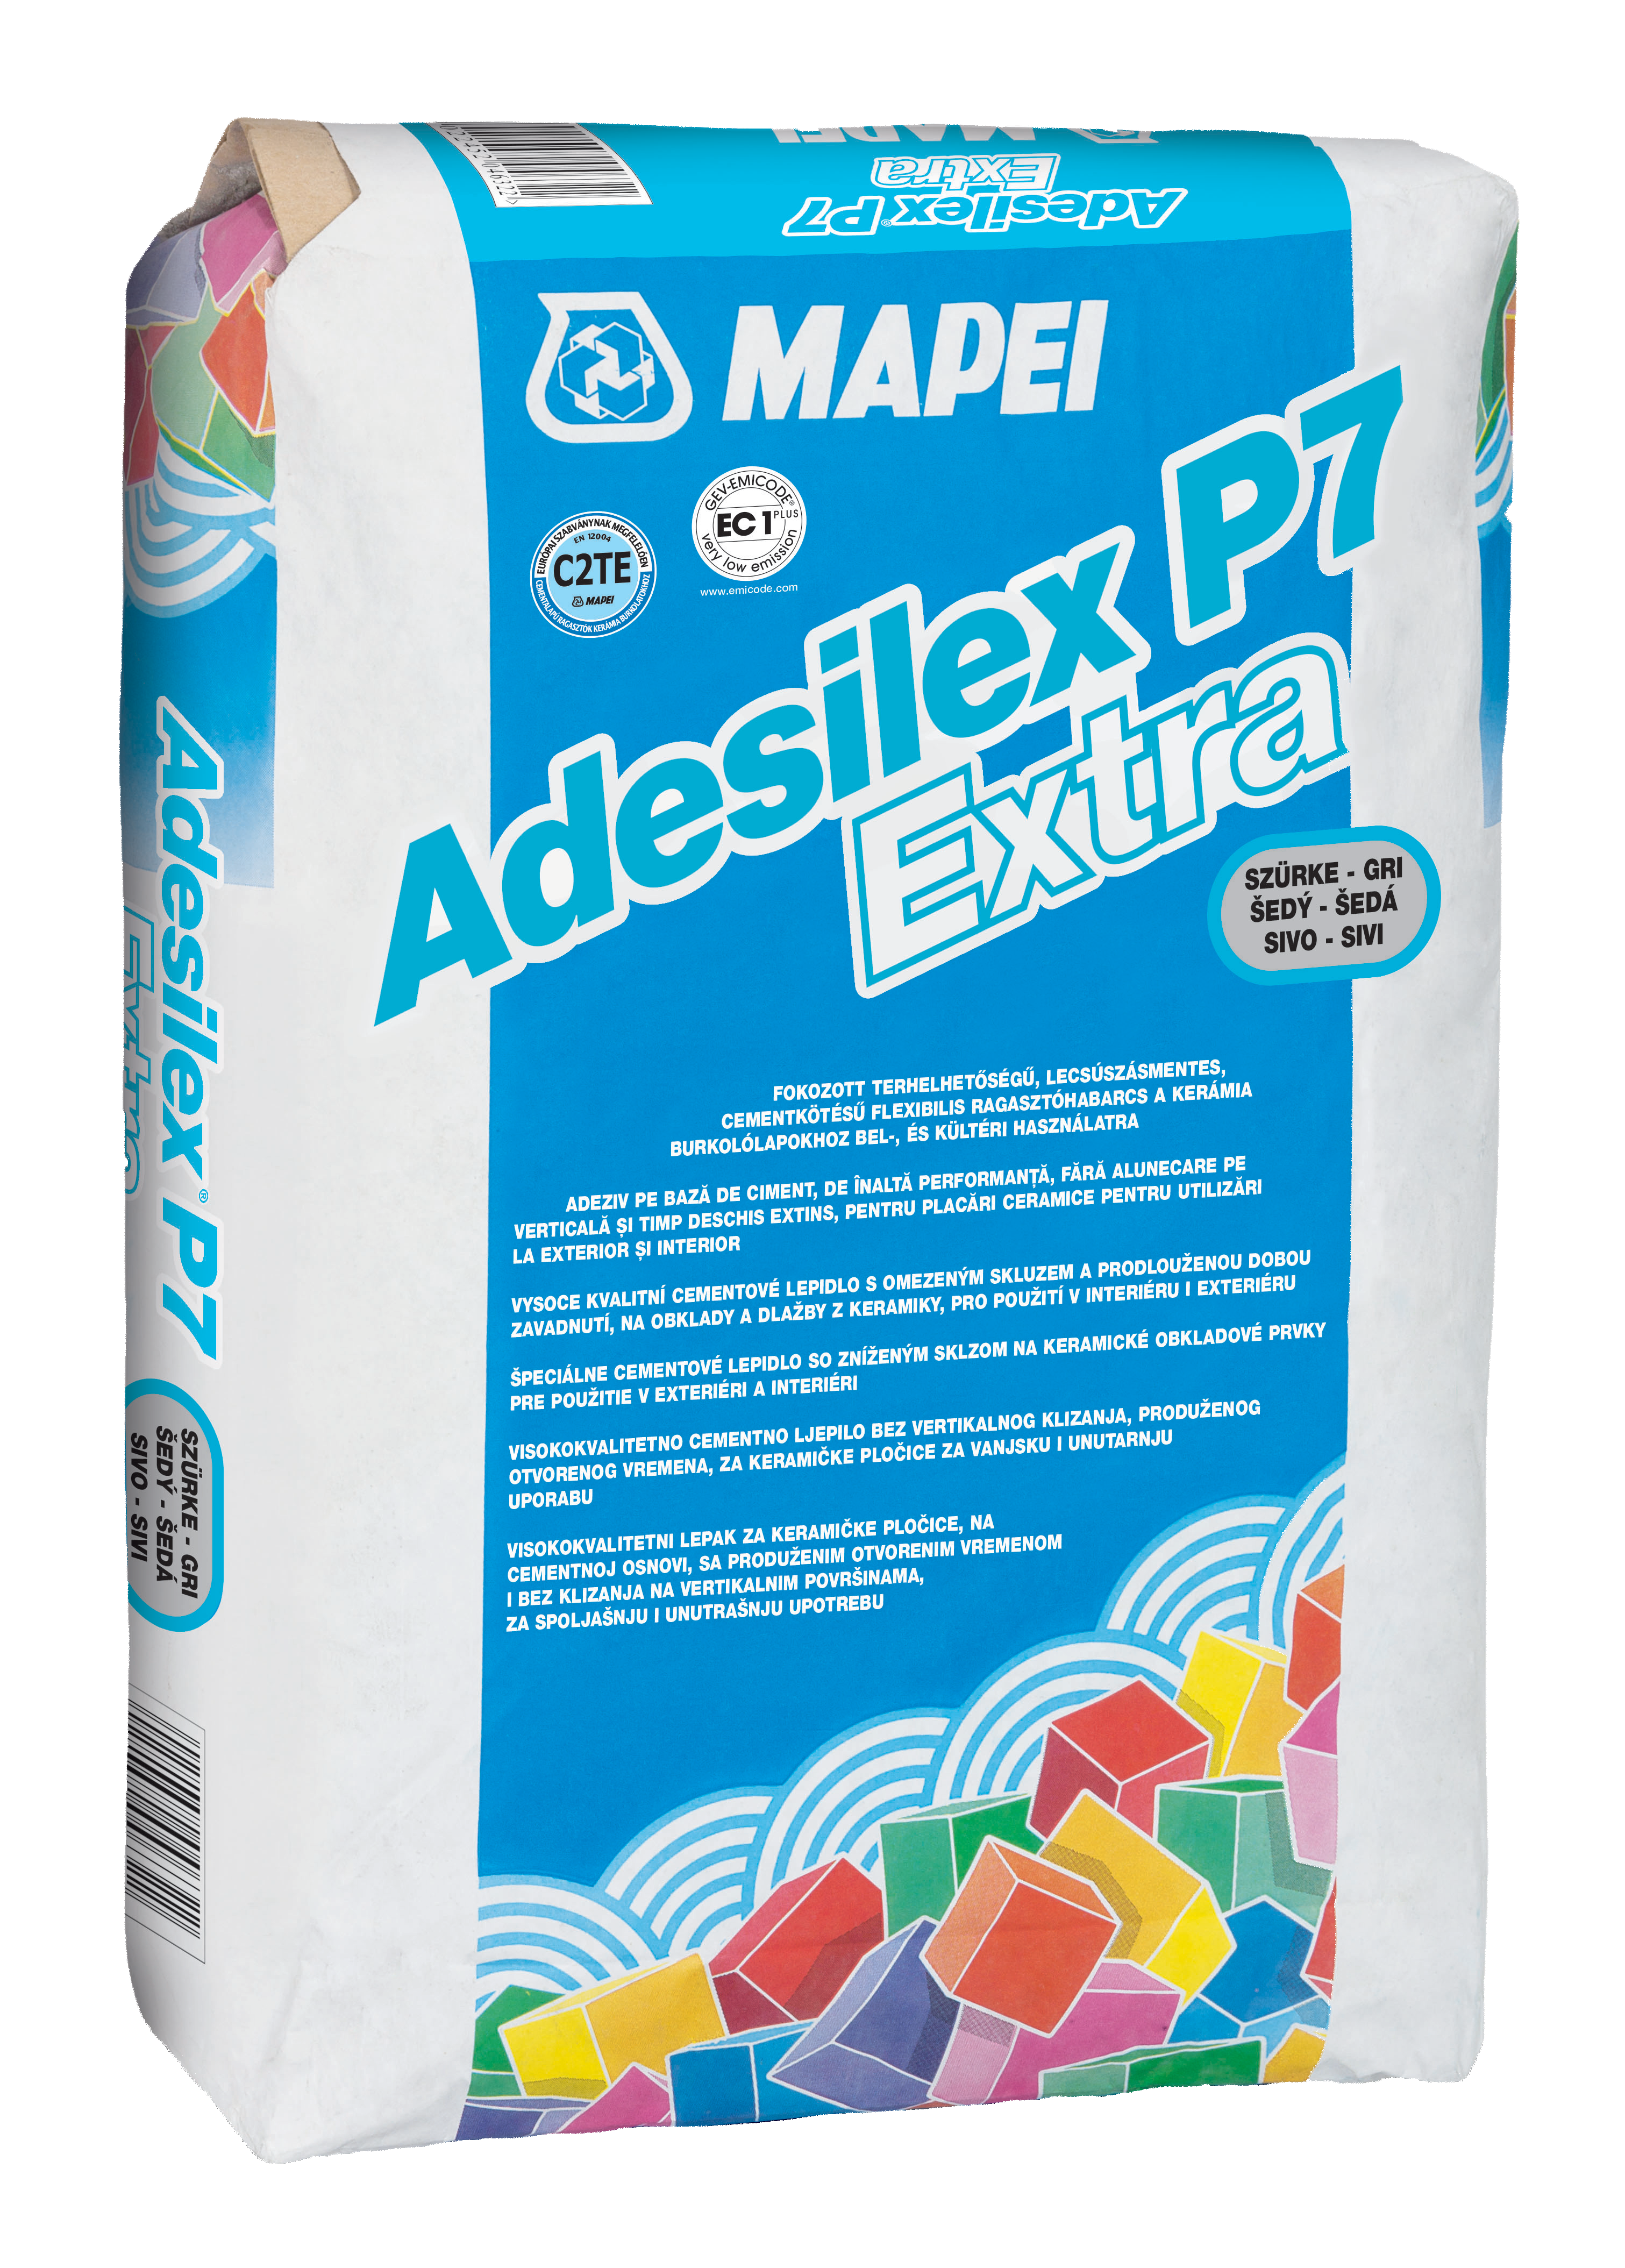 ADESILEX P7 EXTRA - 1